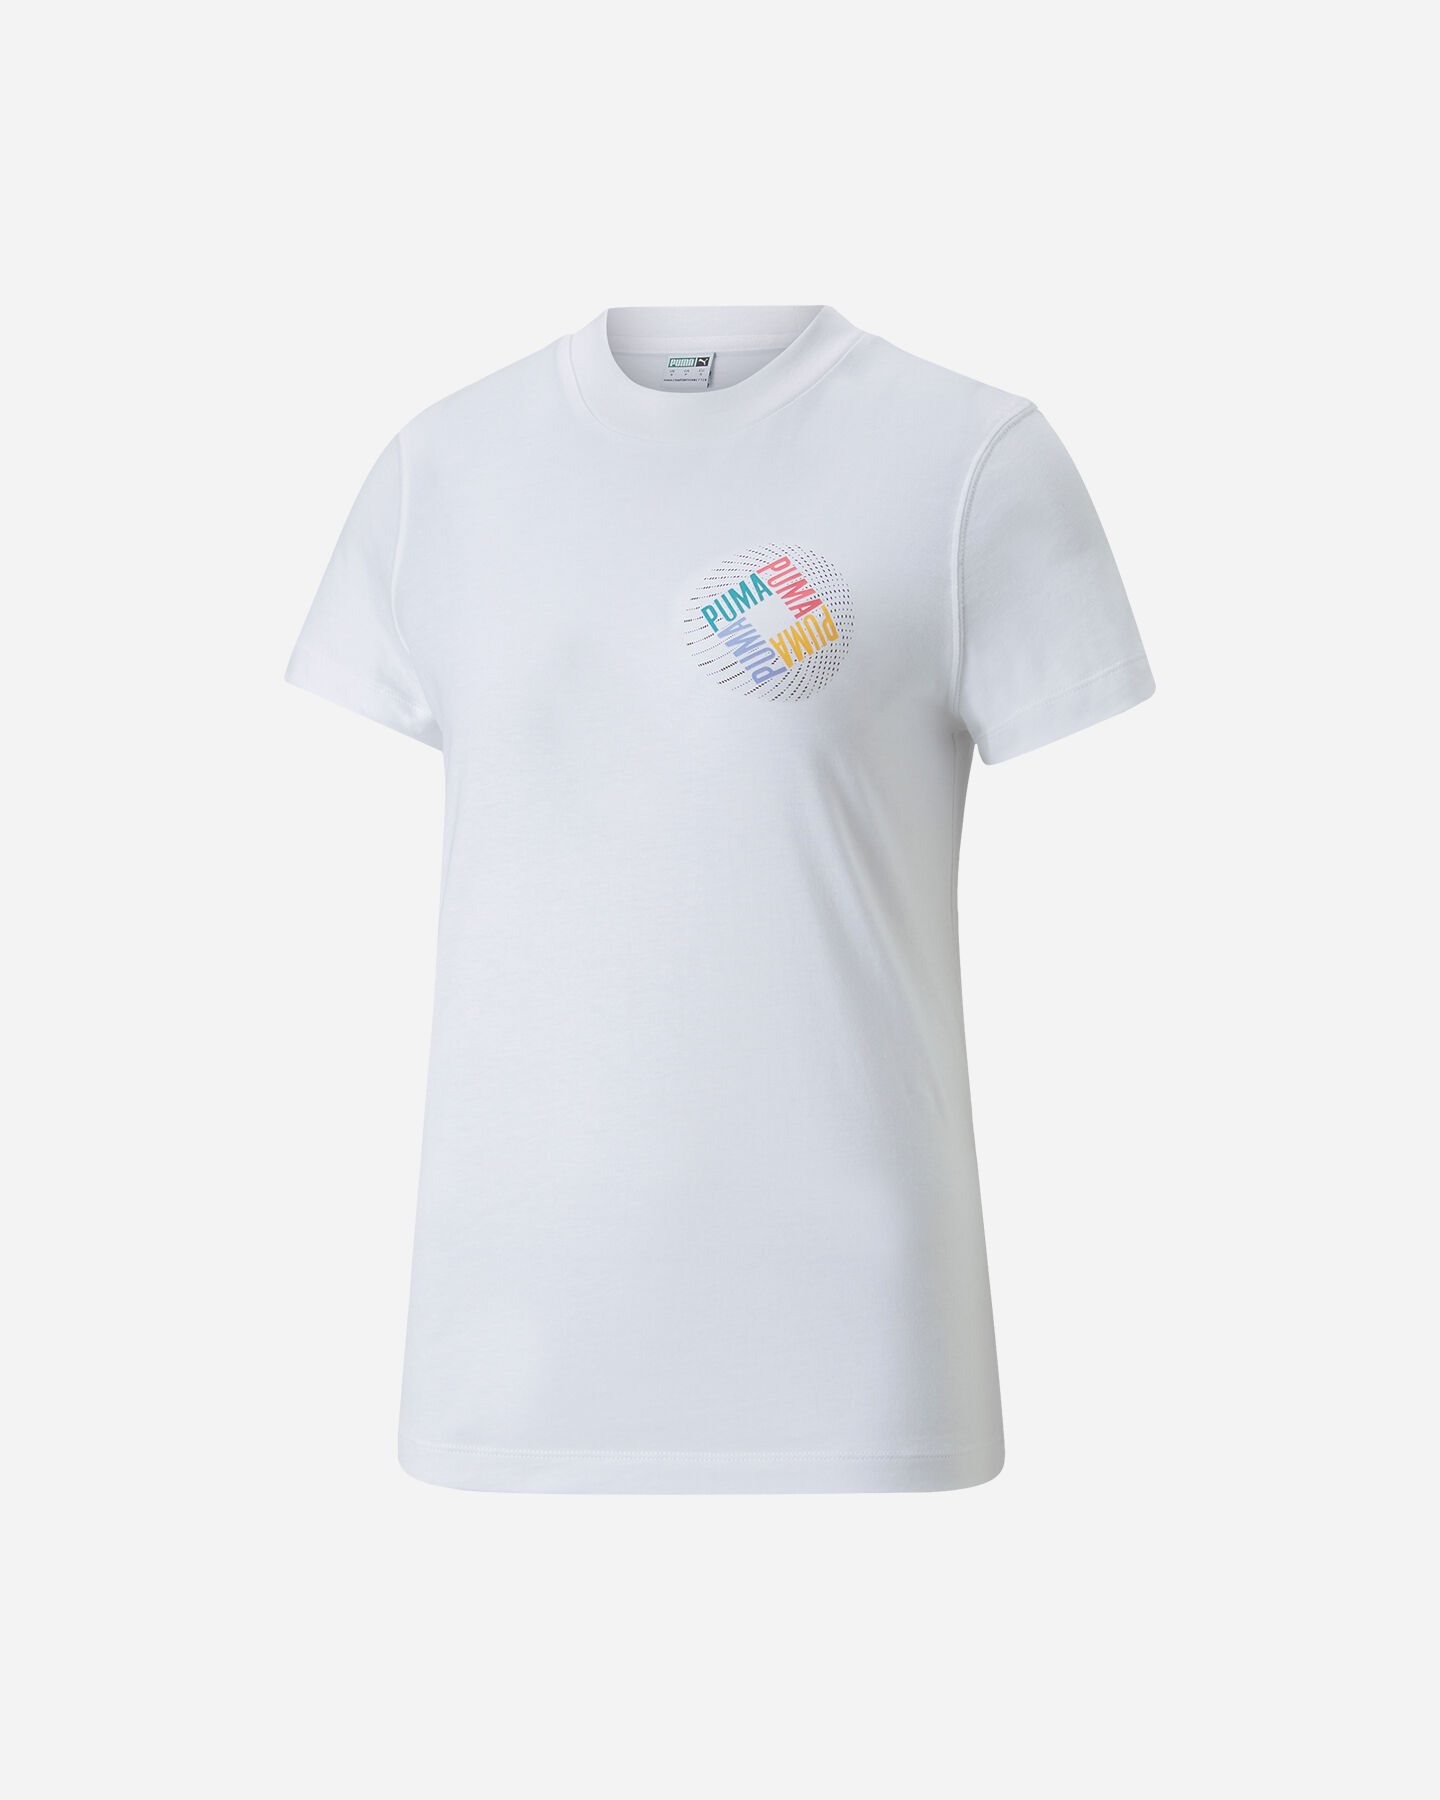  T-Shirt PUMA LOGO GRAPHIC W S5451376|02|L scatto 0